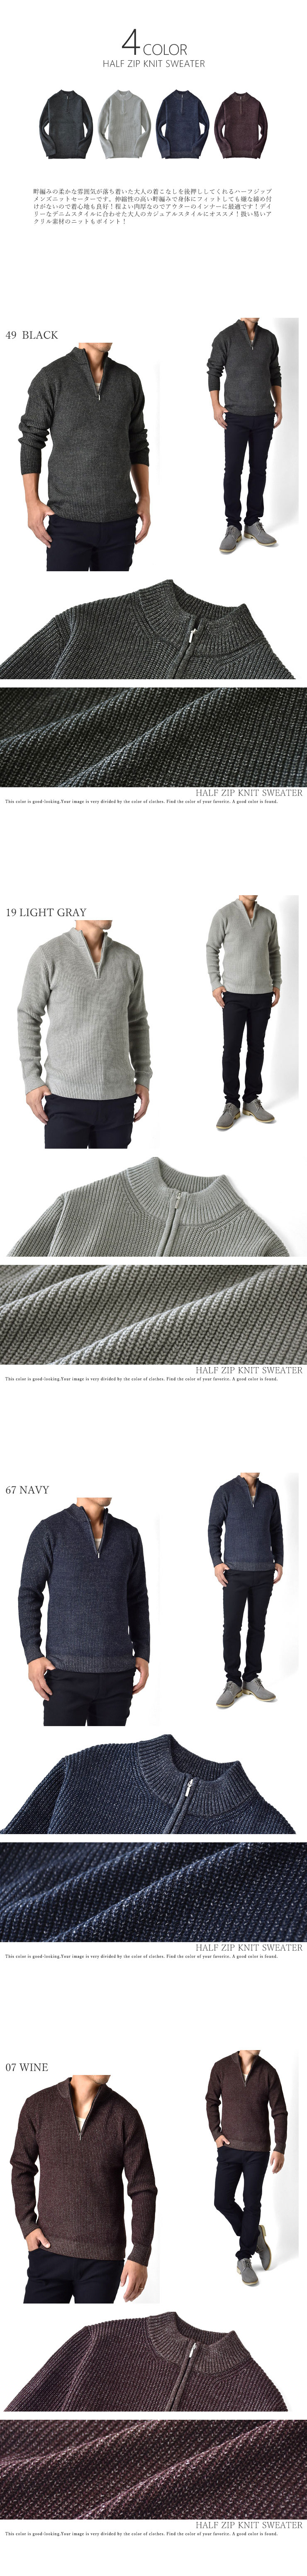 ニットセーター メンズ 畔編み 暖か 柔らか 7ゲージ セール アルージェ 